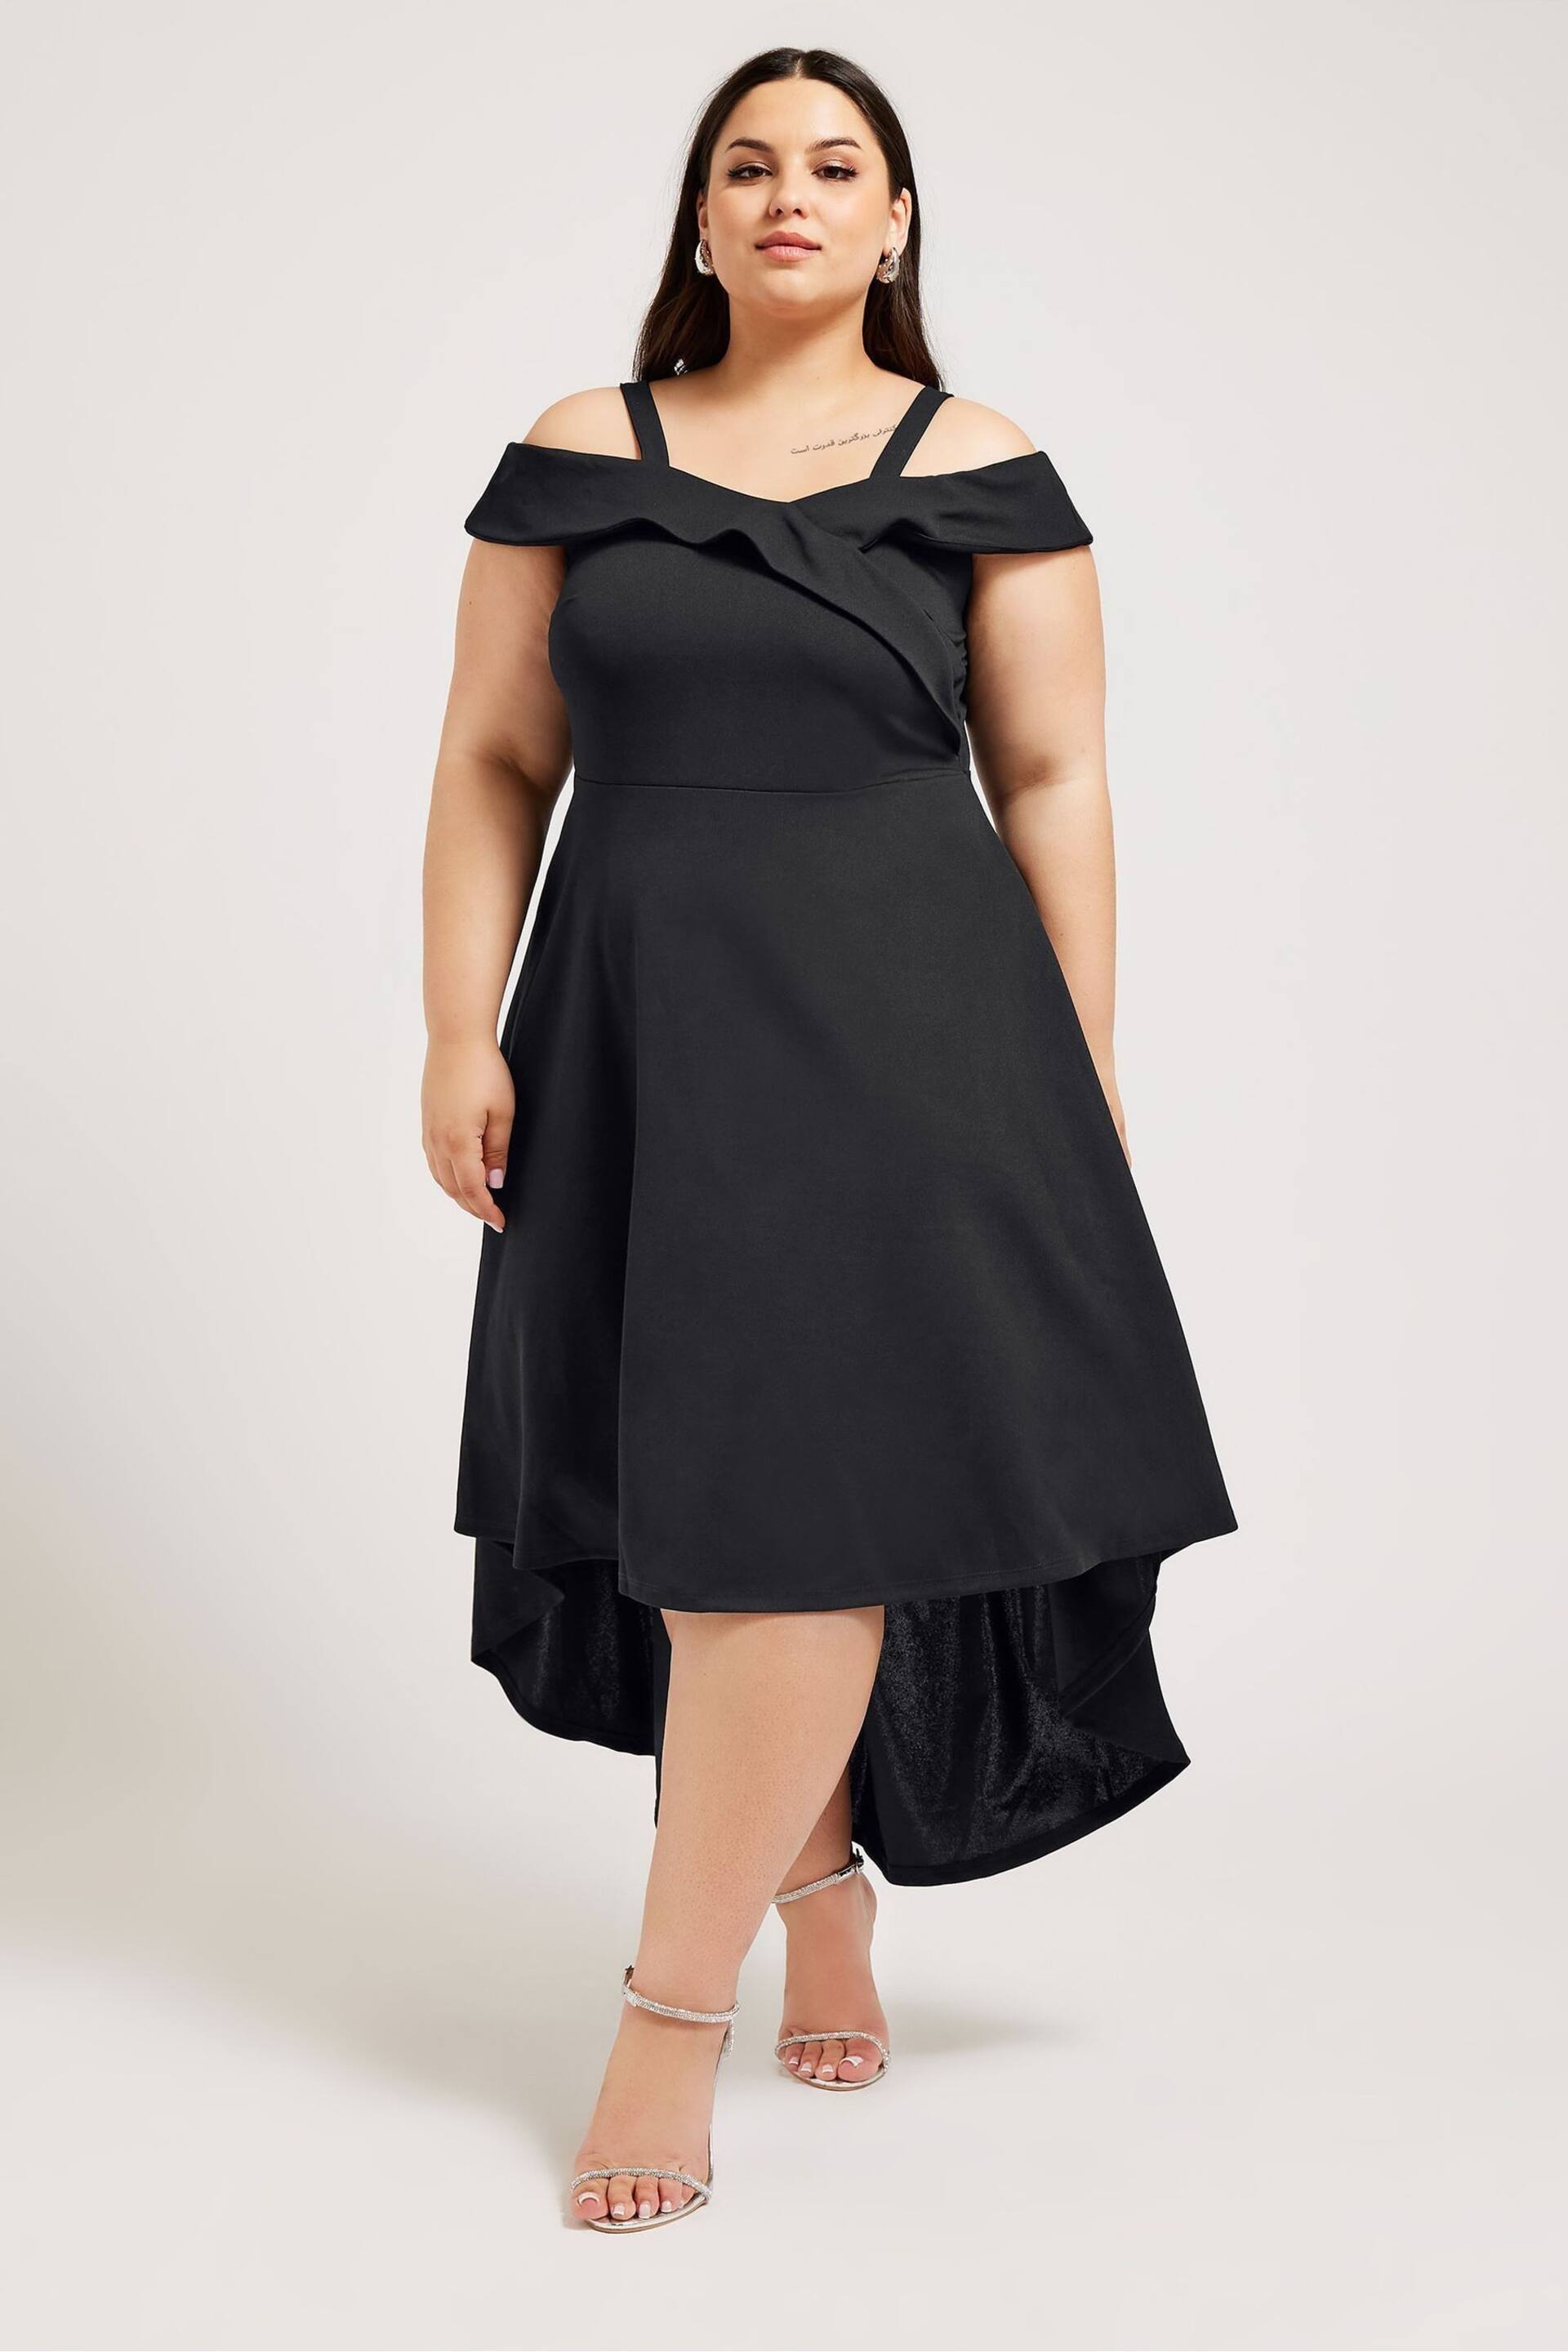 YOURS LONDON Curve Black Black Bardot Dipped Hem Dress - Image 1 of 5